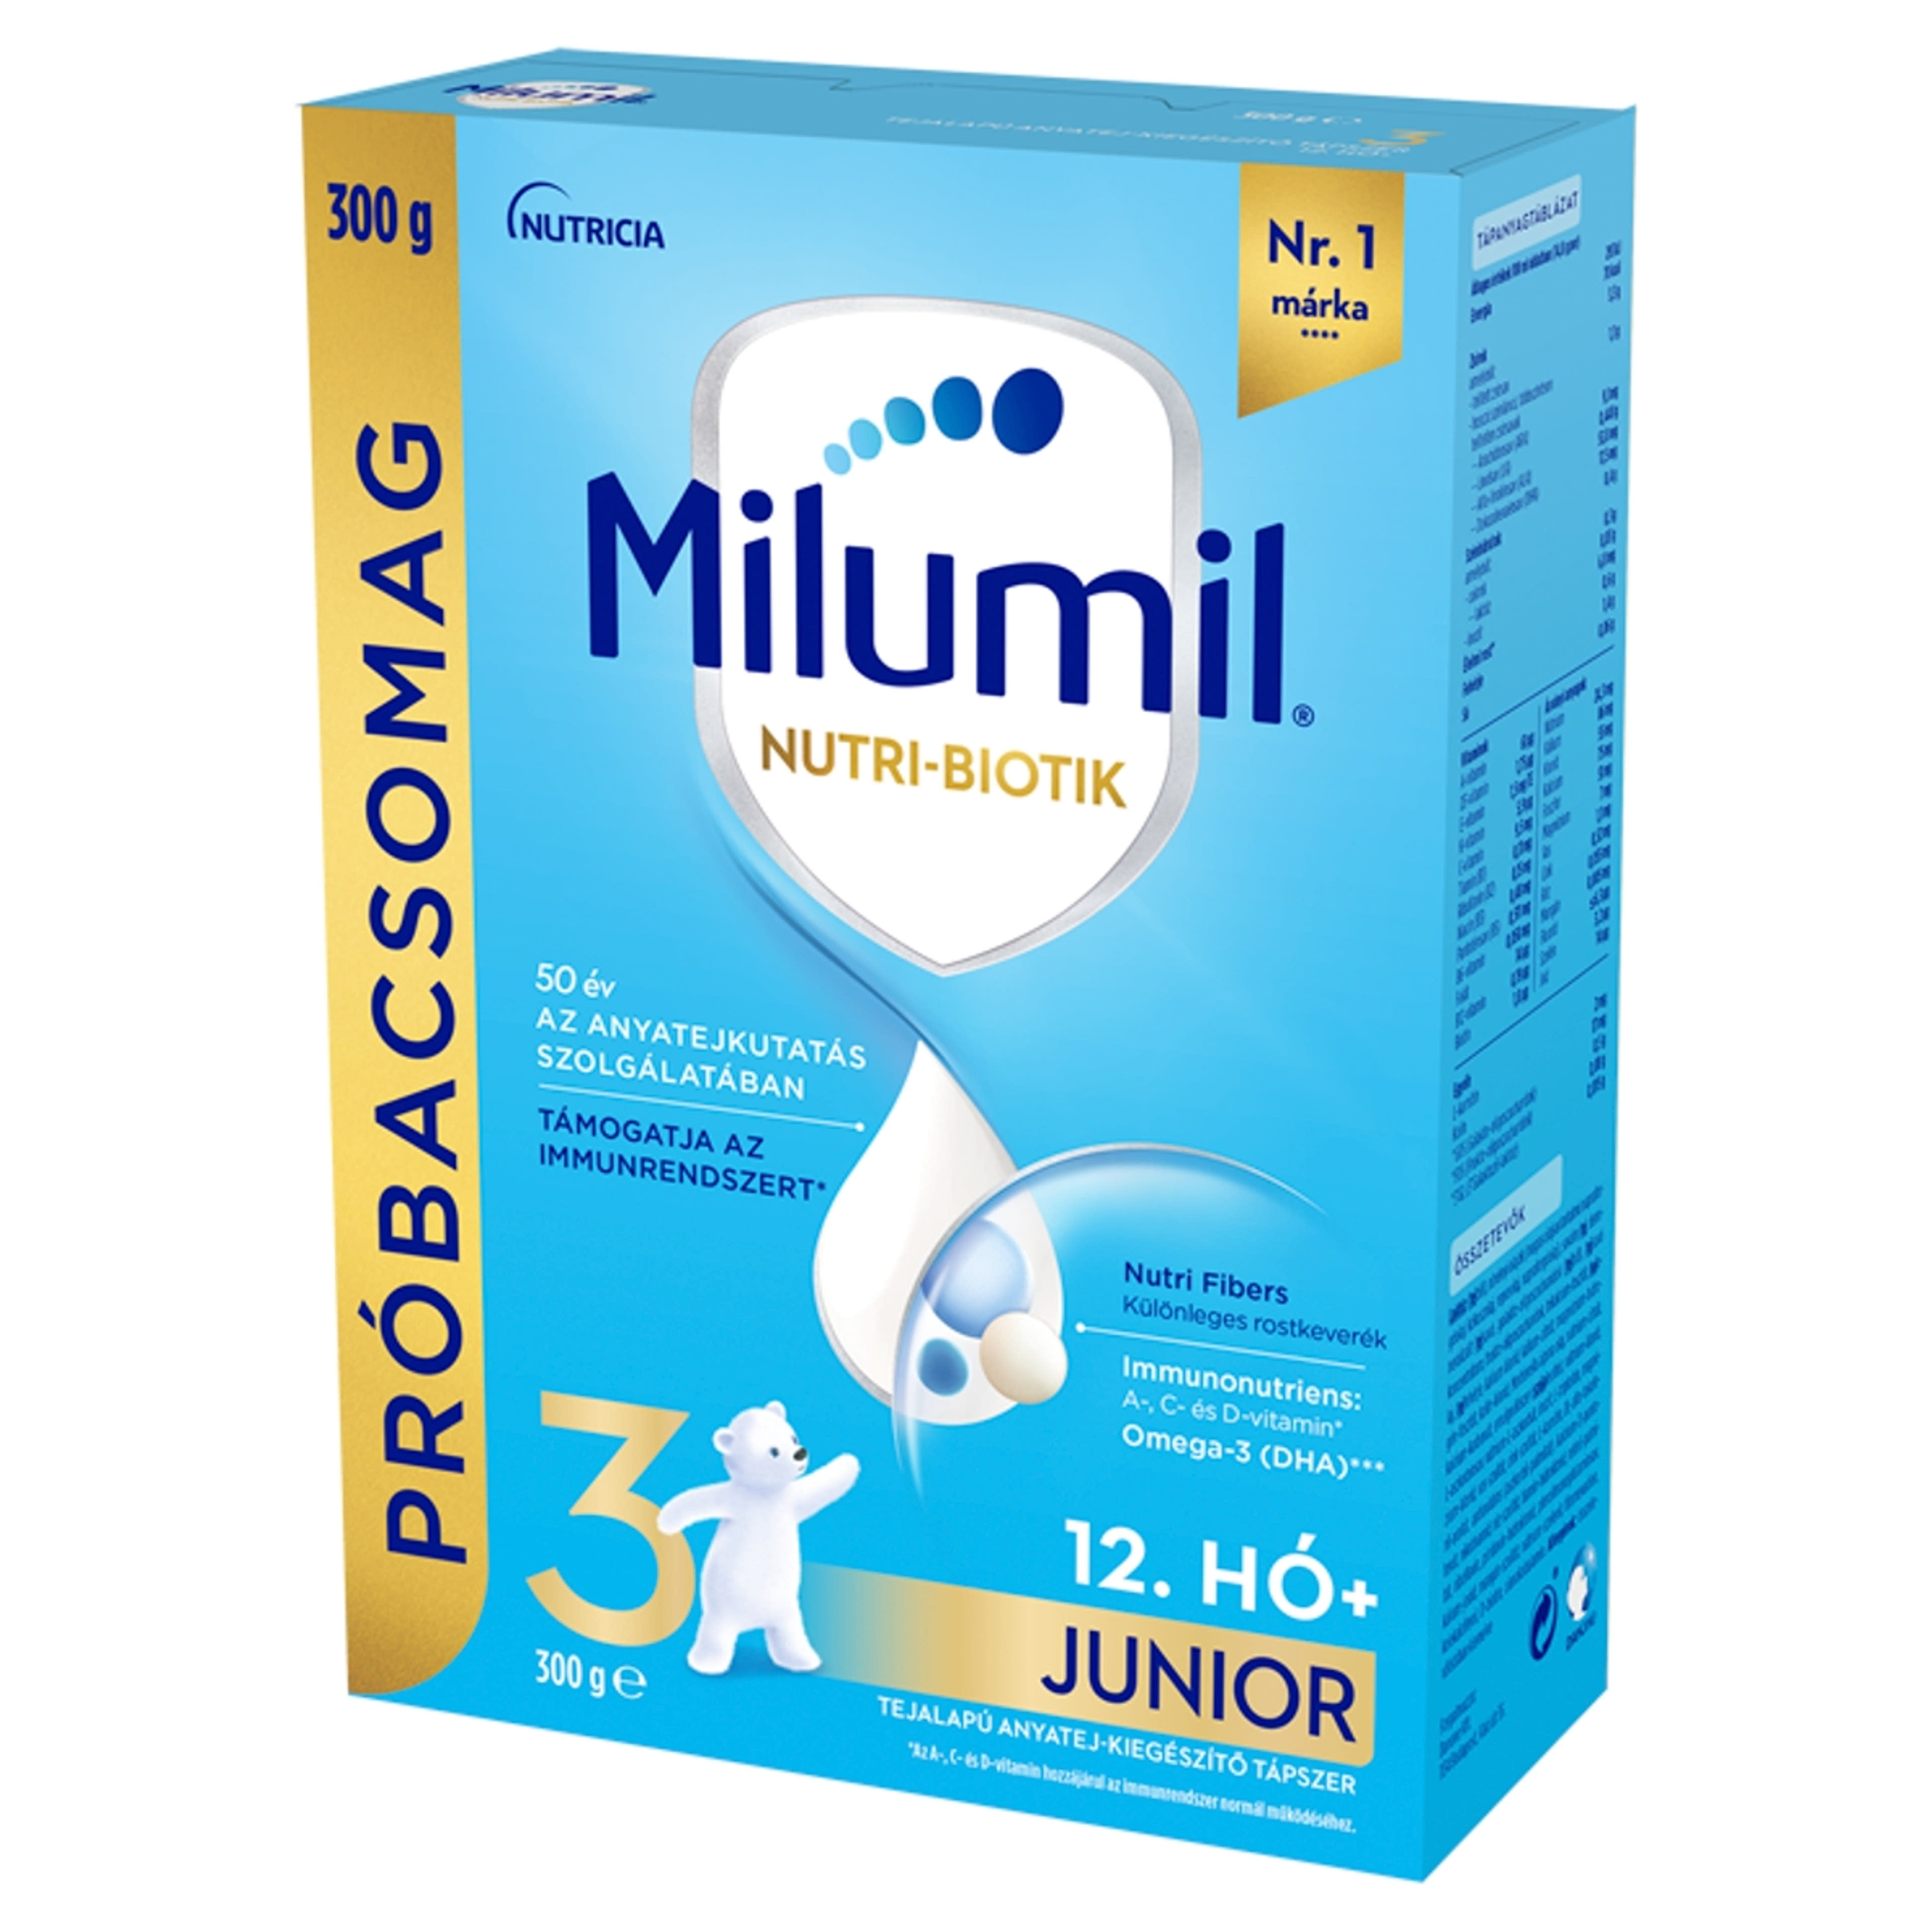 Milumil Nutri-Biotik 3 Junior tejalapú anyatej-kiegészítő tápszer 12.hónapos kortól - 300 g-2